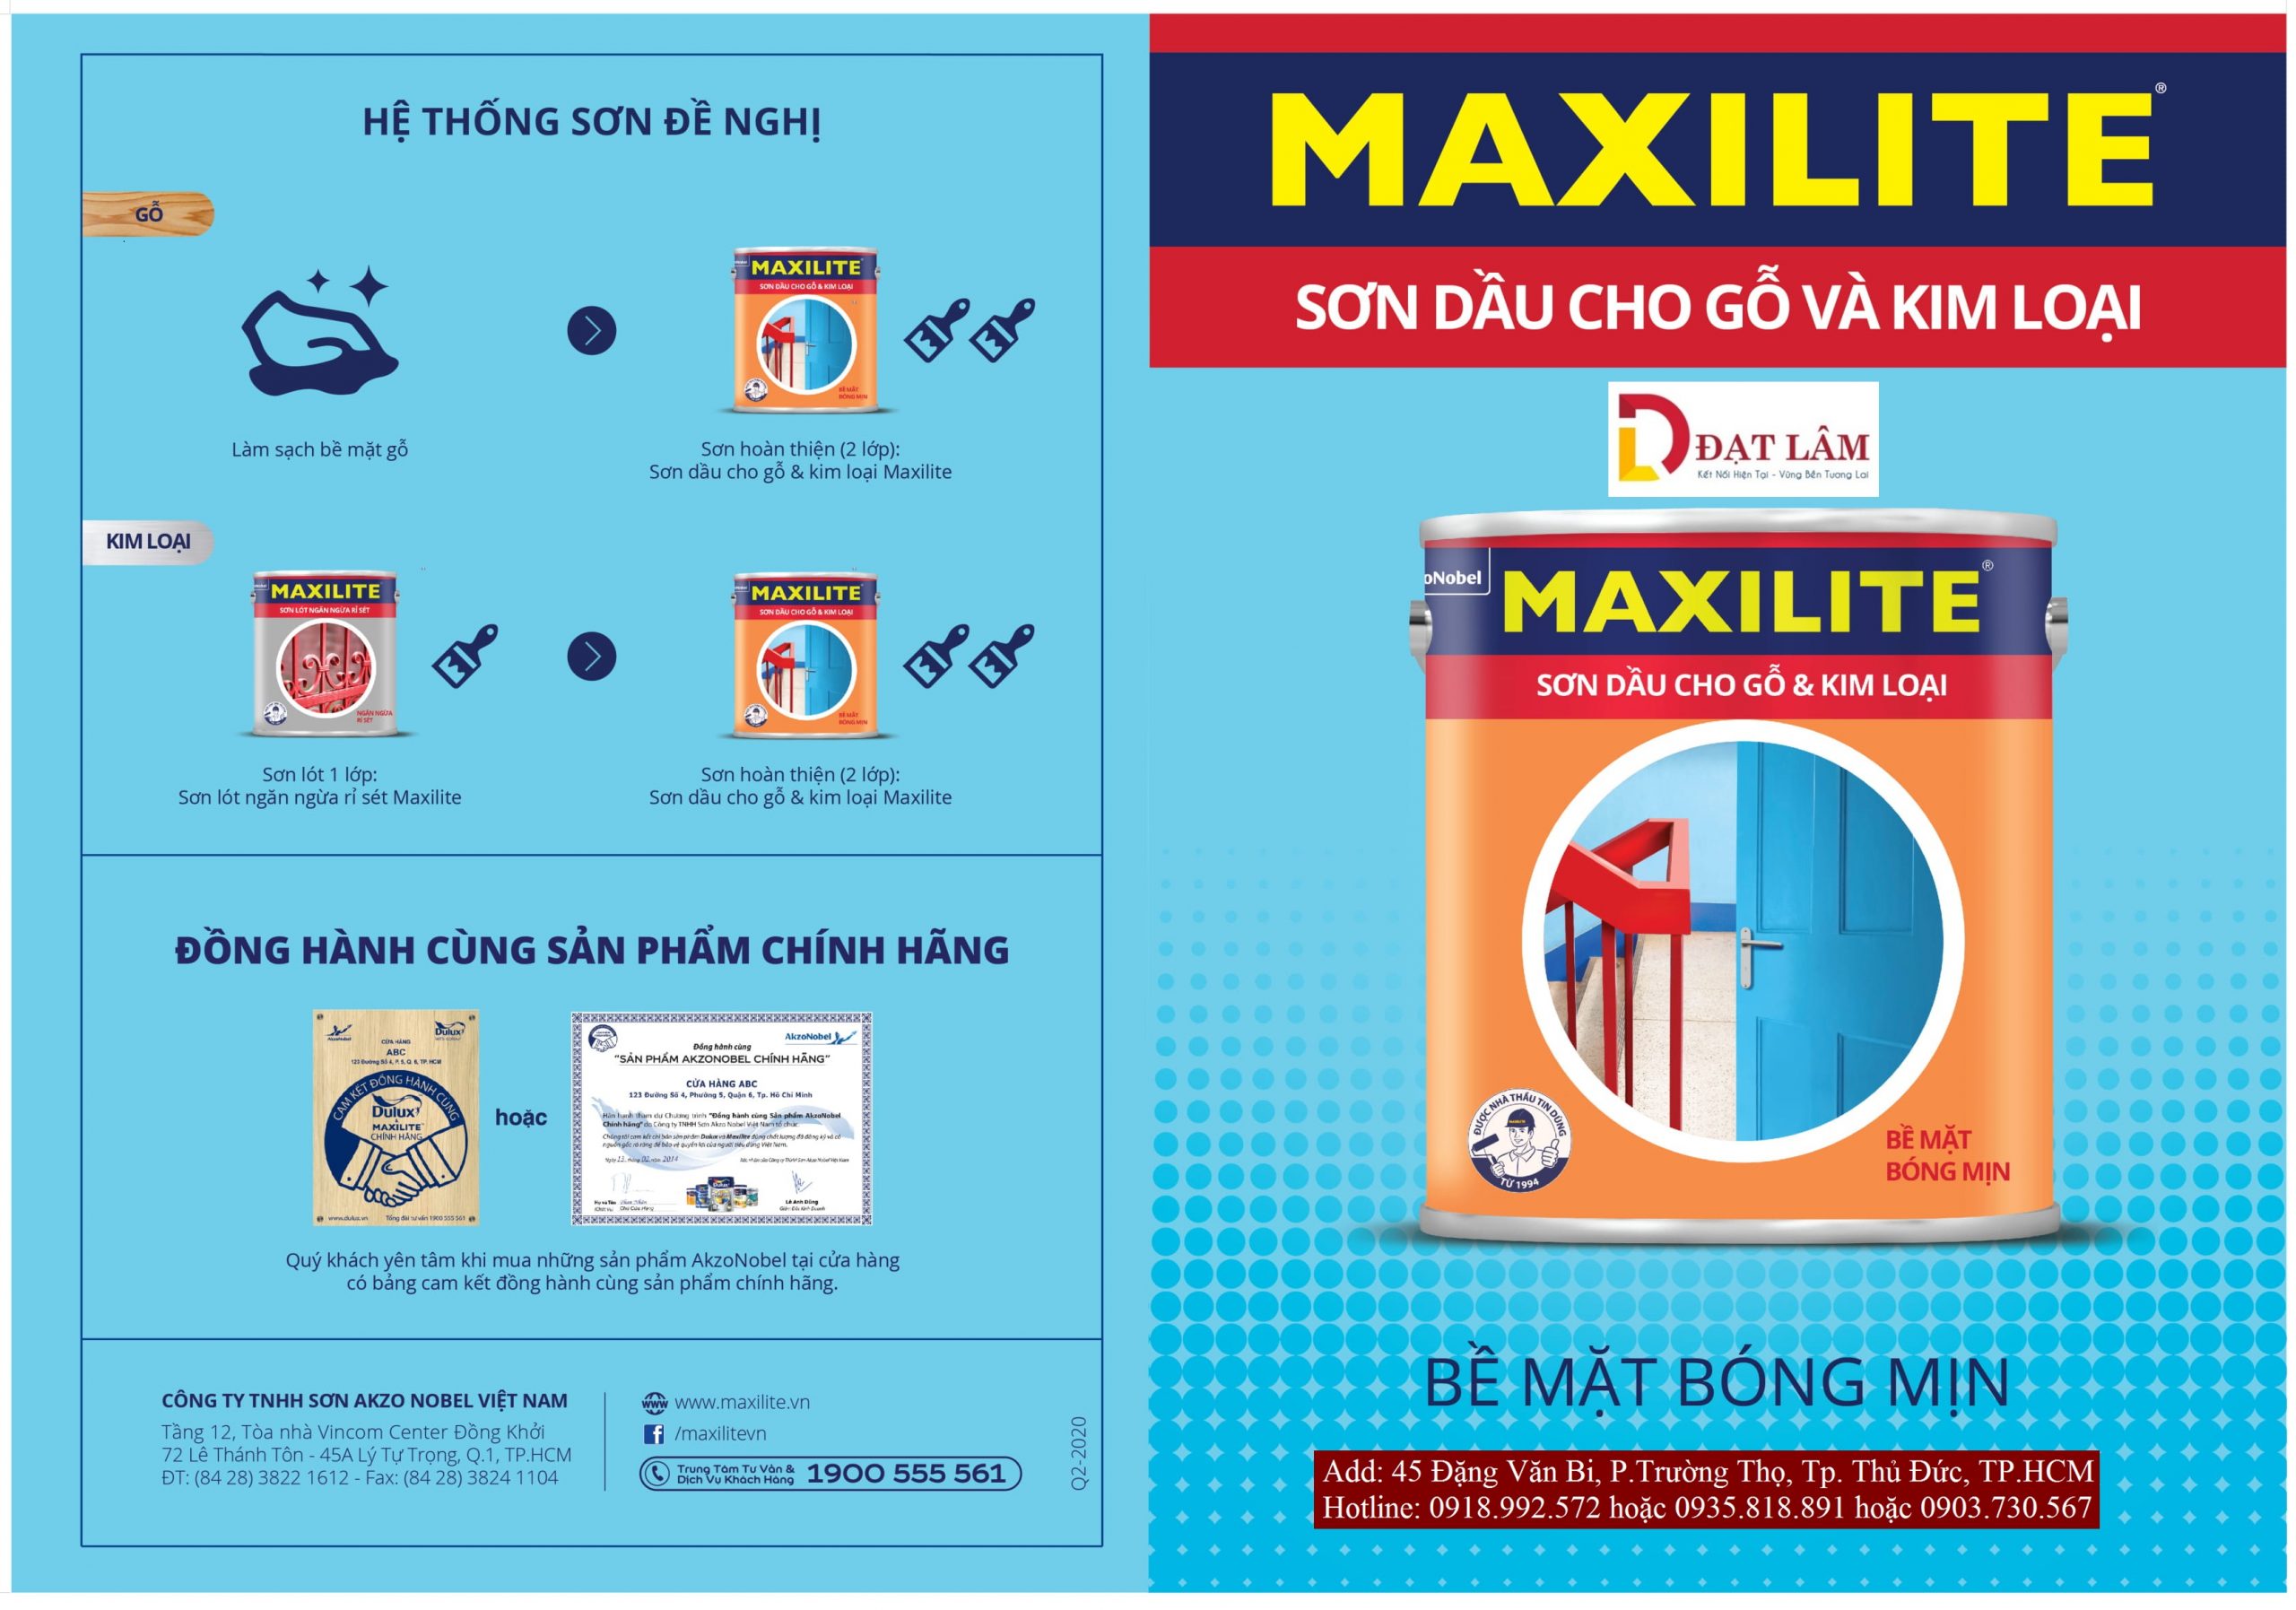 Bảng màu sơn dầu Maxilite - Với bảng màu sơn dầu Maxilite đa dạng và phong phú, bạn sẽ tìm thấy lựa chọn hoàn hảo cho ngôi nhà của mình. Nhiều màu sắc đẹp mắt và độ bền cao chắc chắn sẽ làm bạn hài lòng. Hãy xem hình ảnh để dễ dàng tìm kiếm bảng màu sơn dầu Maxilite phù hợp.